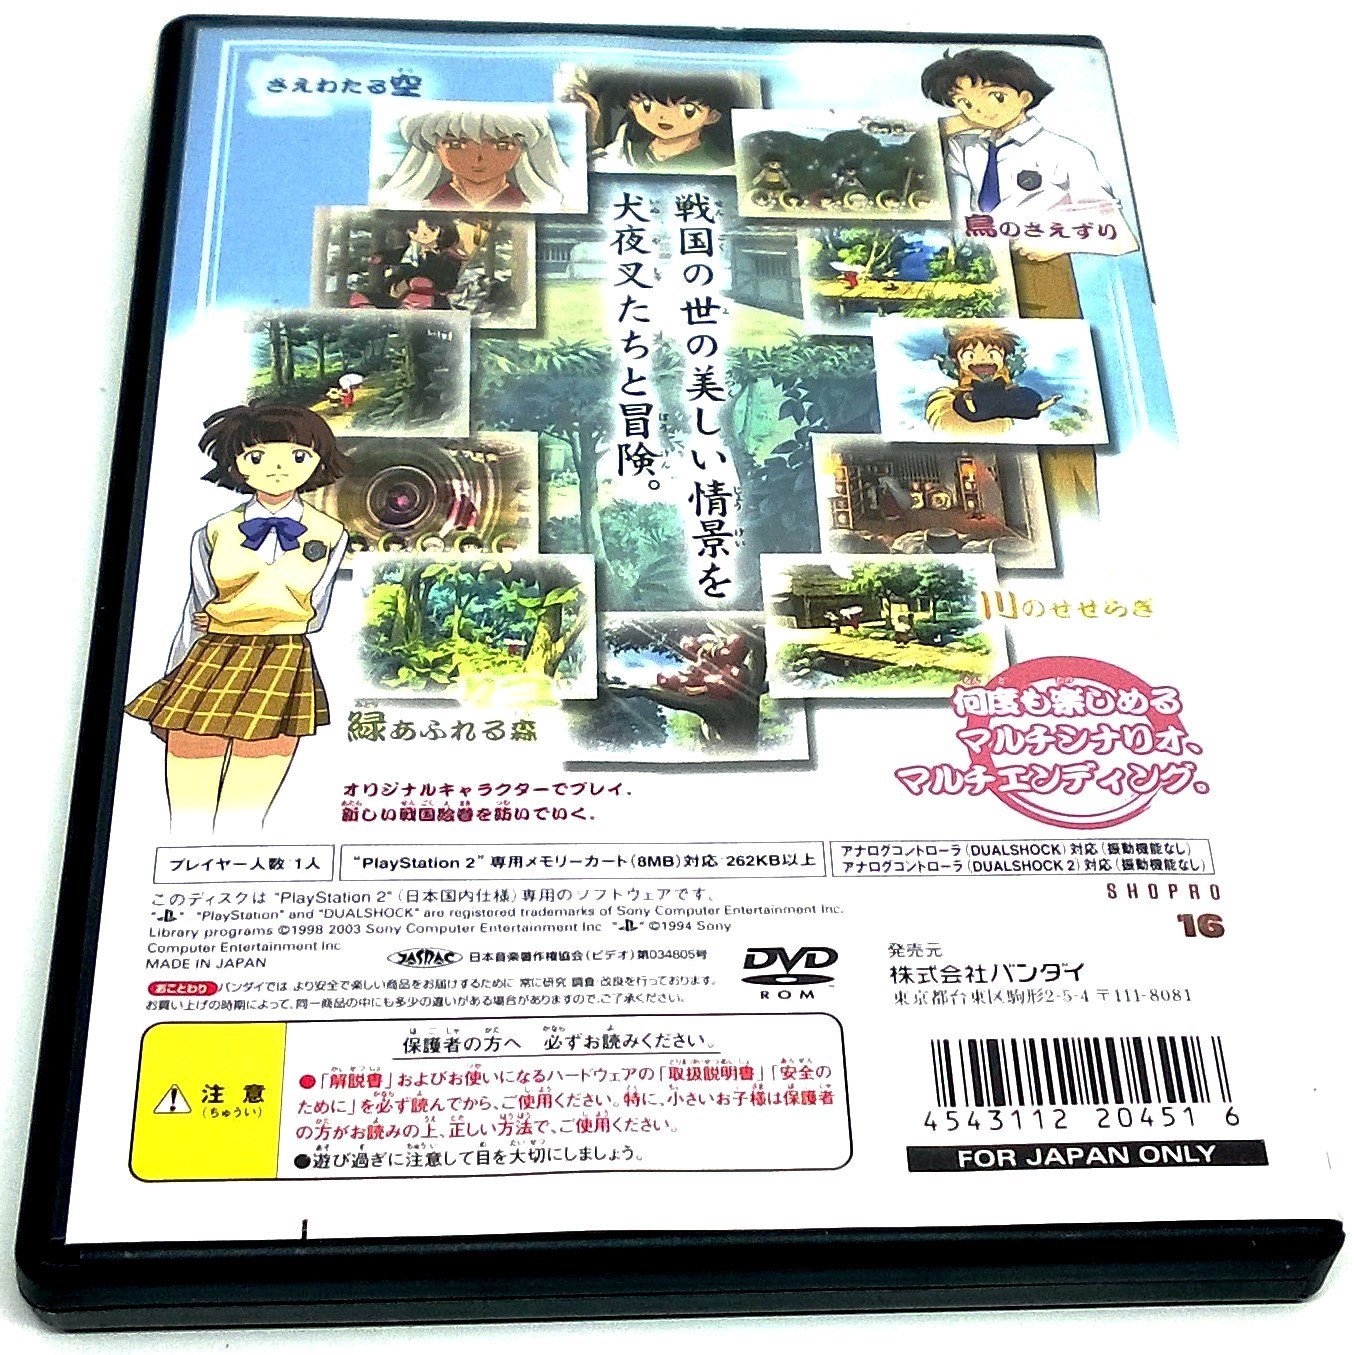 Inuyasha: Juuso no Kamen for PlayStation 2 (Import) - Back of case